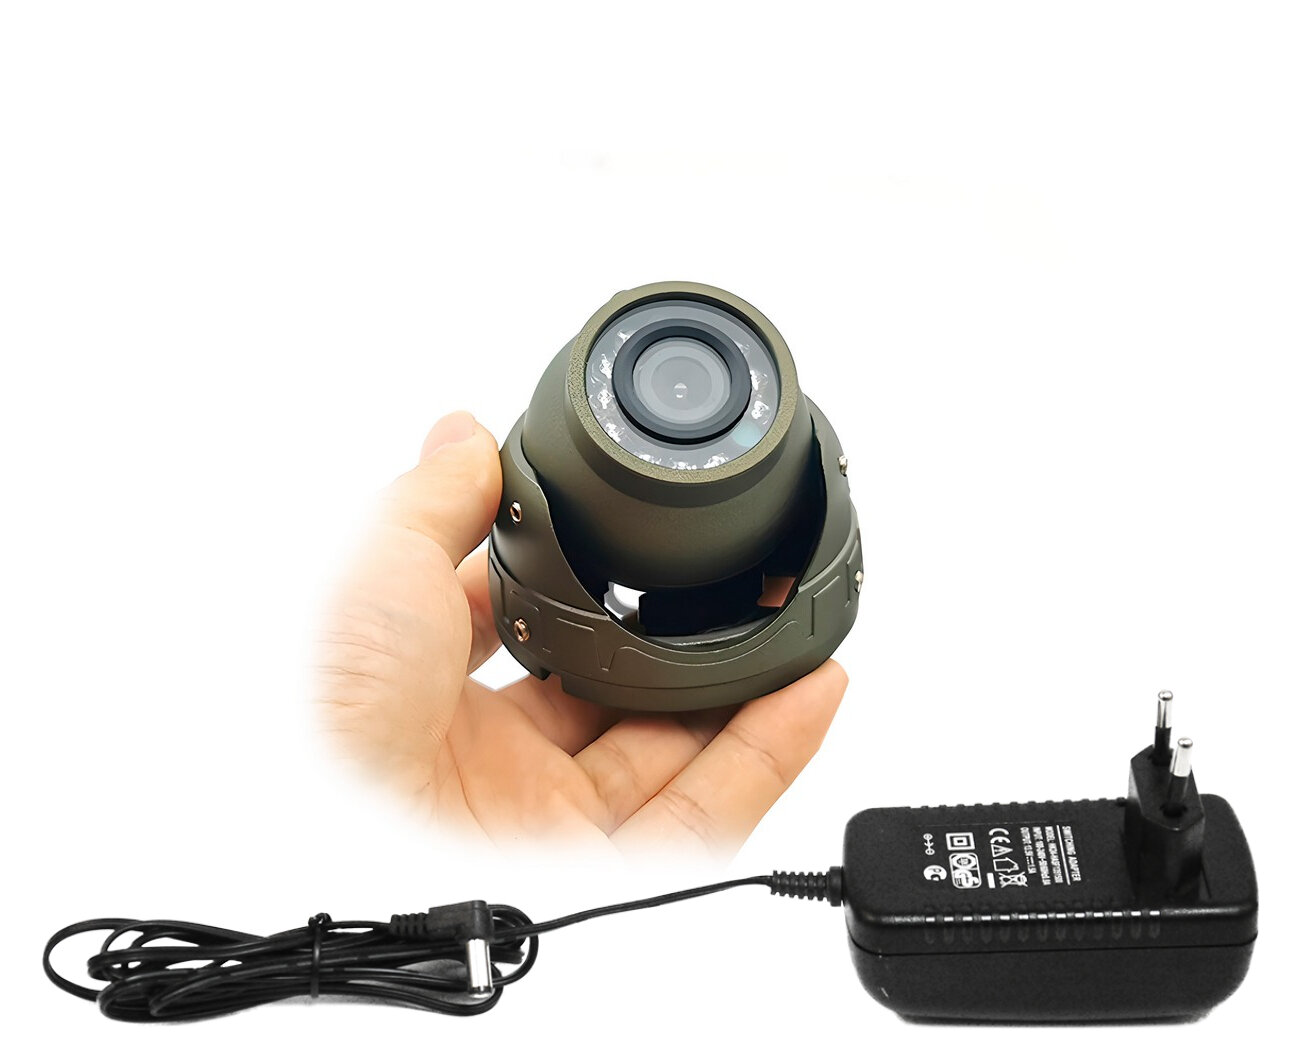 КДМ Мод:11(А5) (E1871EU) - купольная 5MP AHD (TVI CVI) камера наблюдения - разрешение 5 Мп ИК-подсветка микрофон металлический корпус